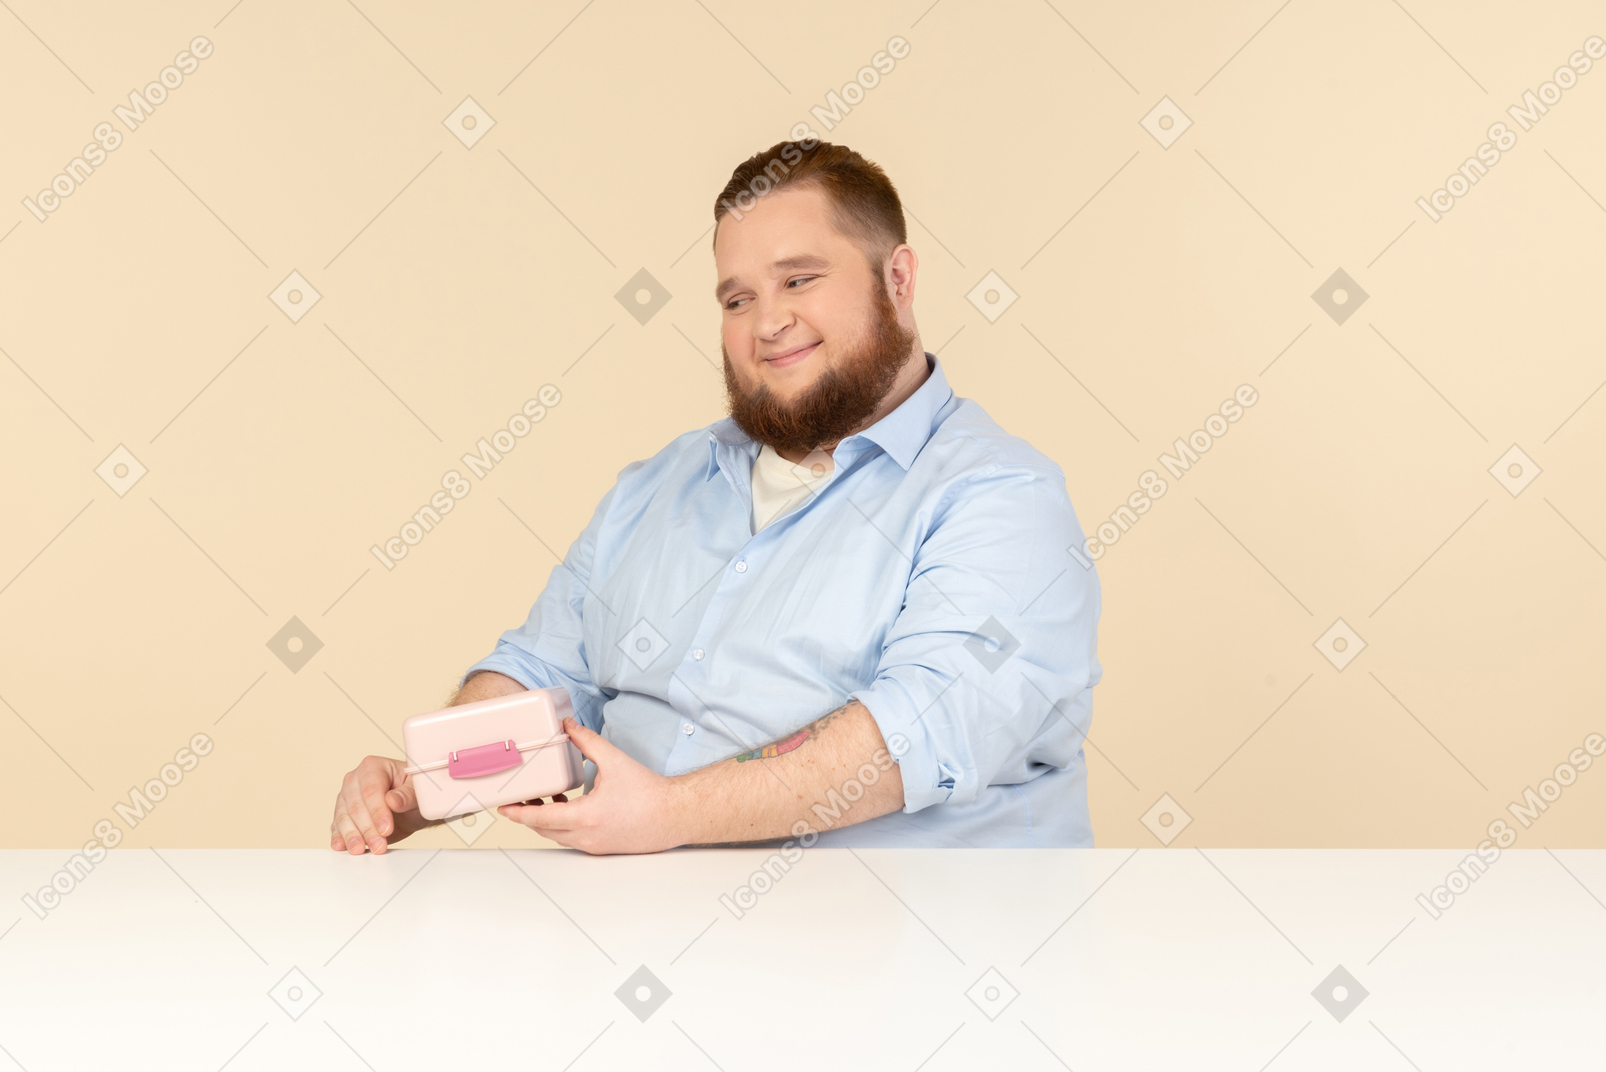 Großer mann am tisch sitzen und lunchbox halten